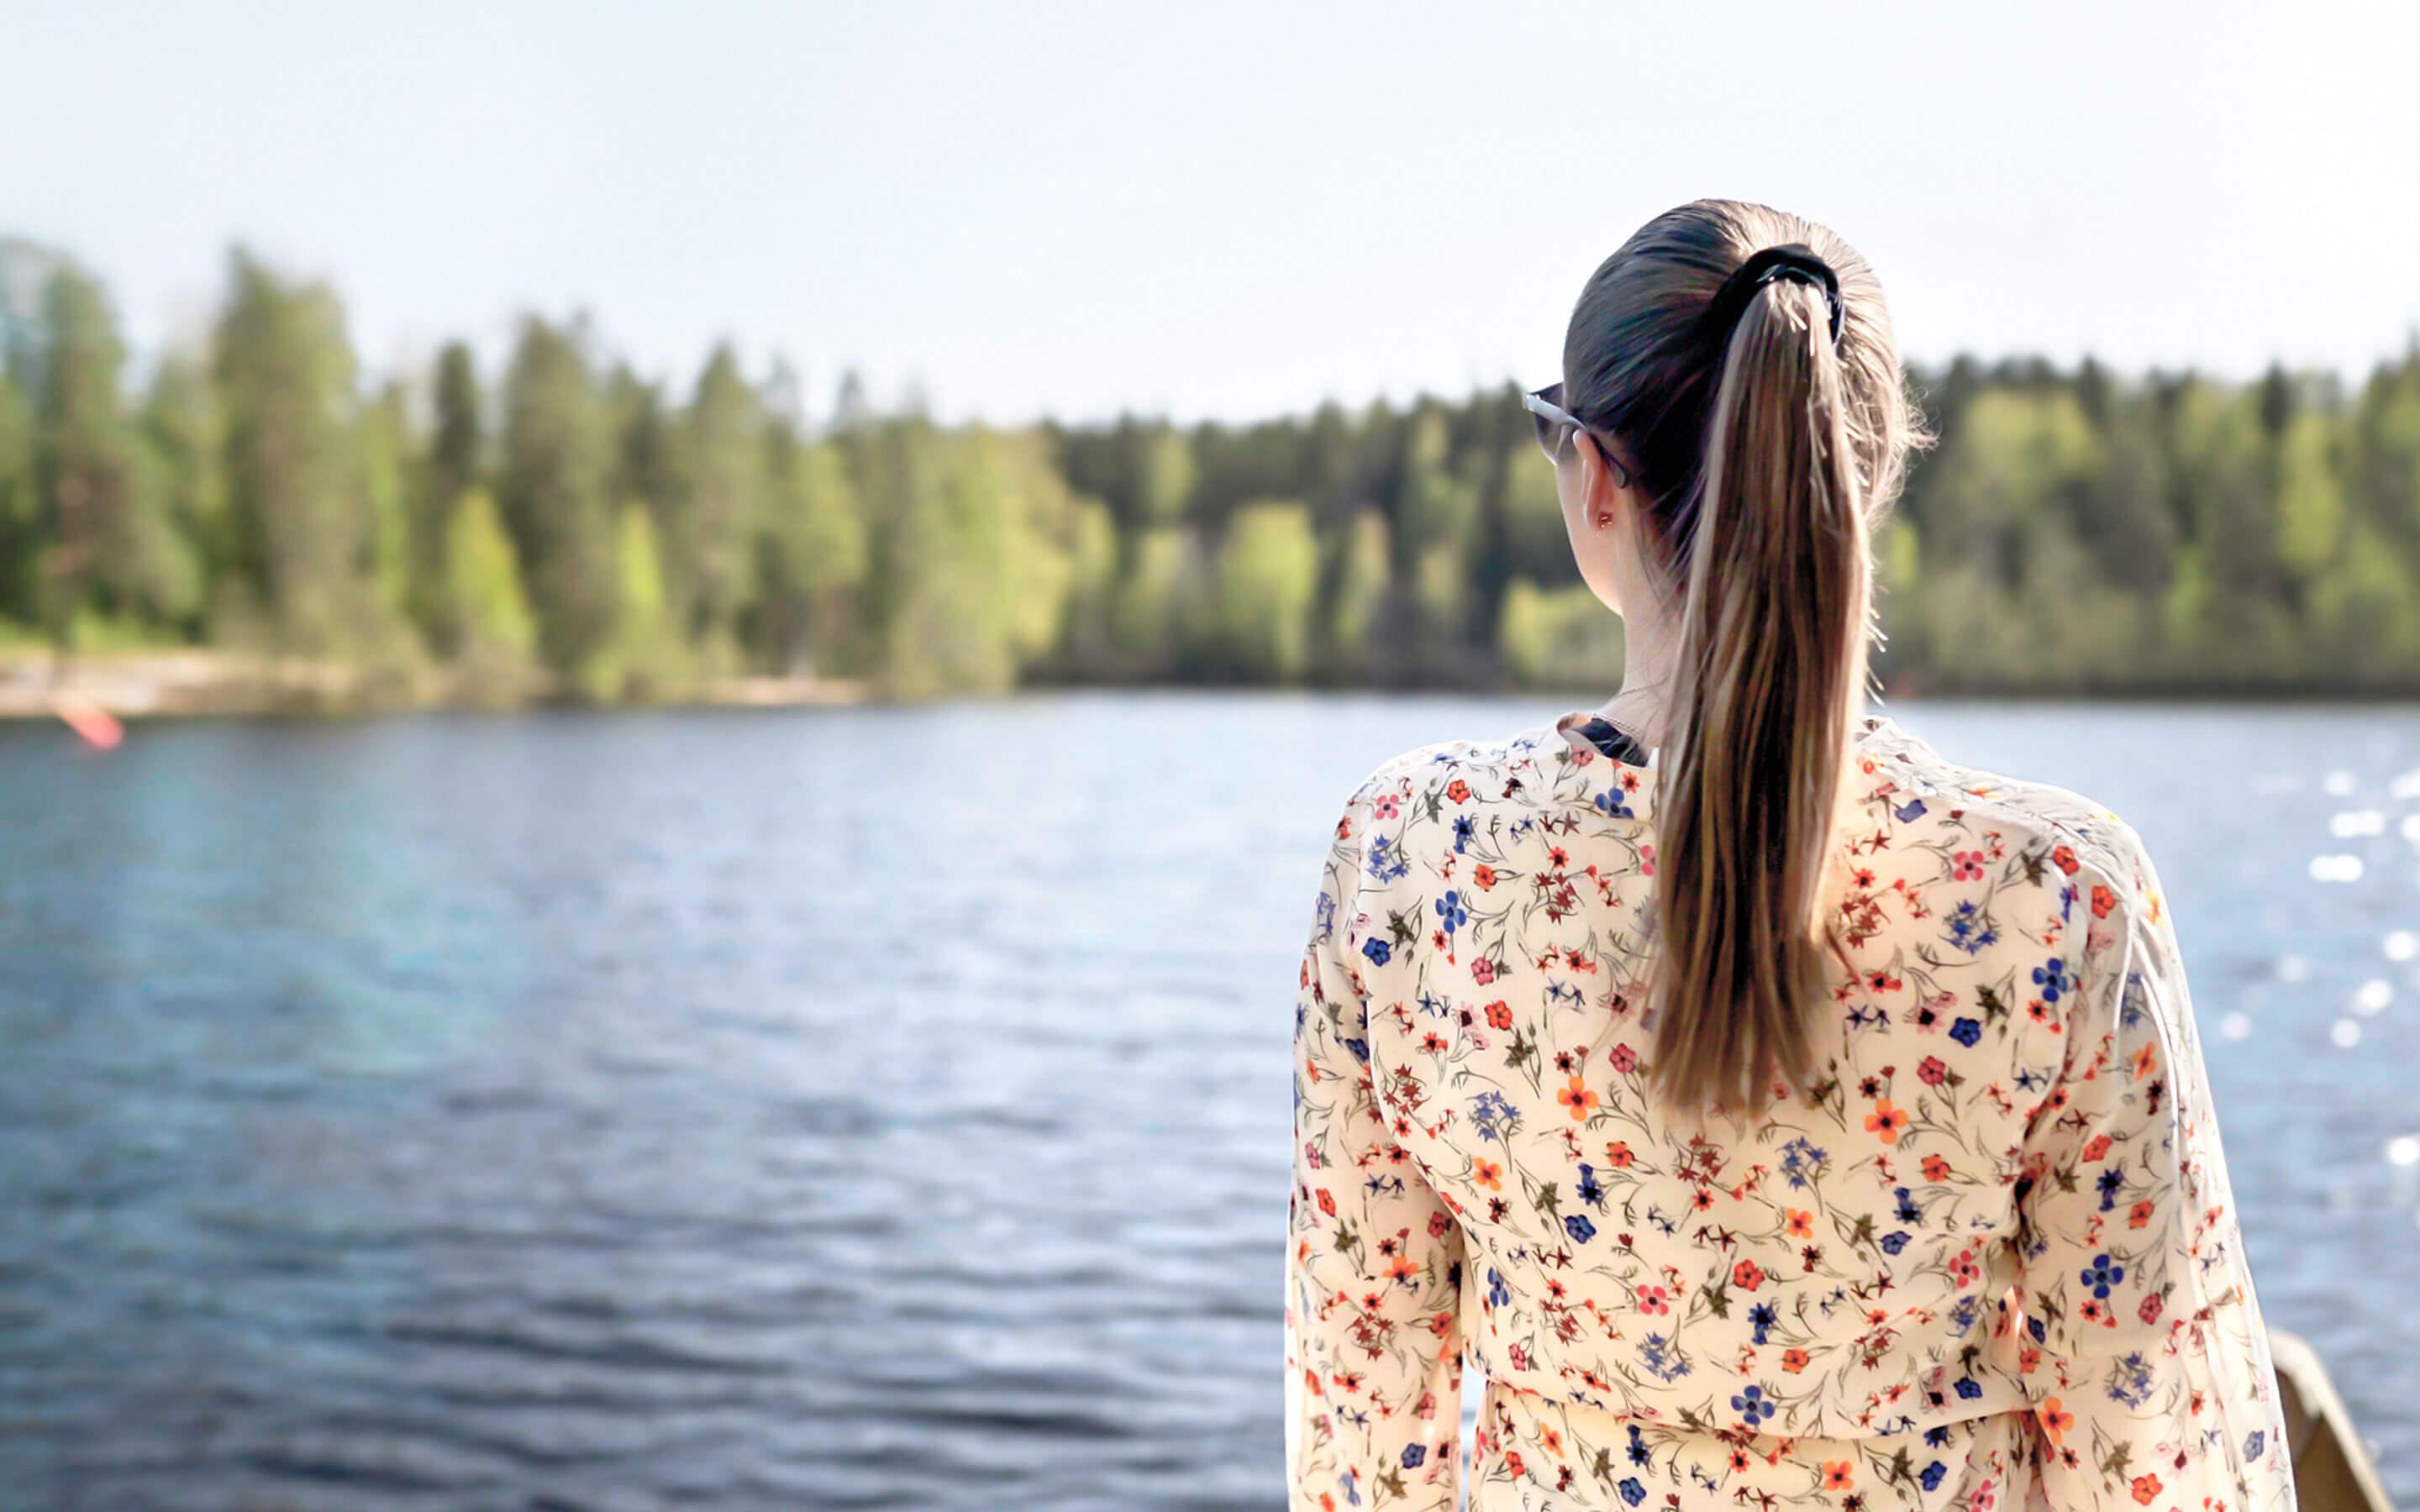 Eine Frau in einer Bluse mit Blumenmuster schaut auf einen See. Das Ufer grenzt an einen Wald voller Bäume.